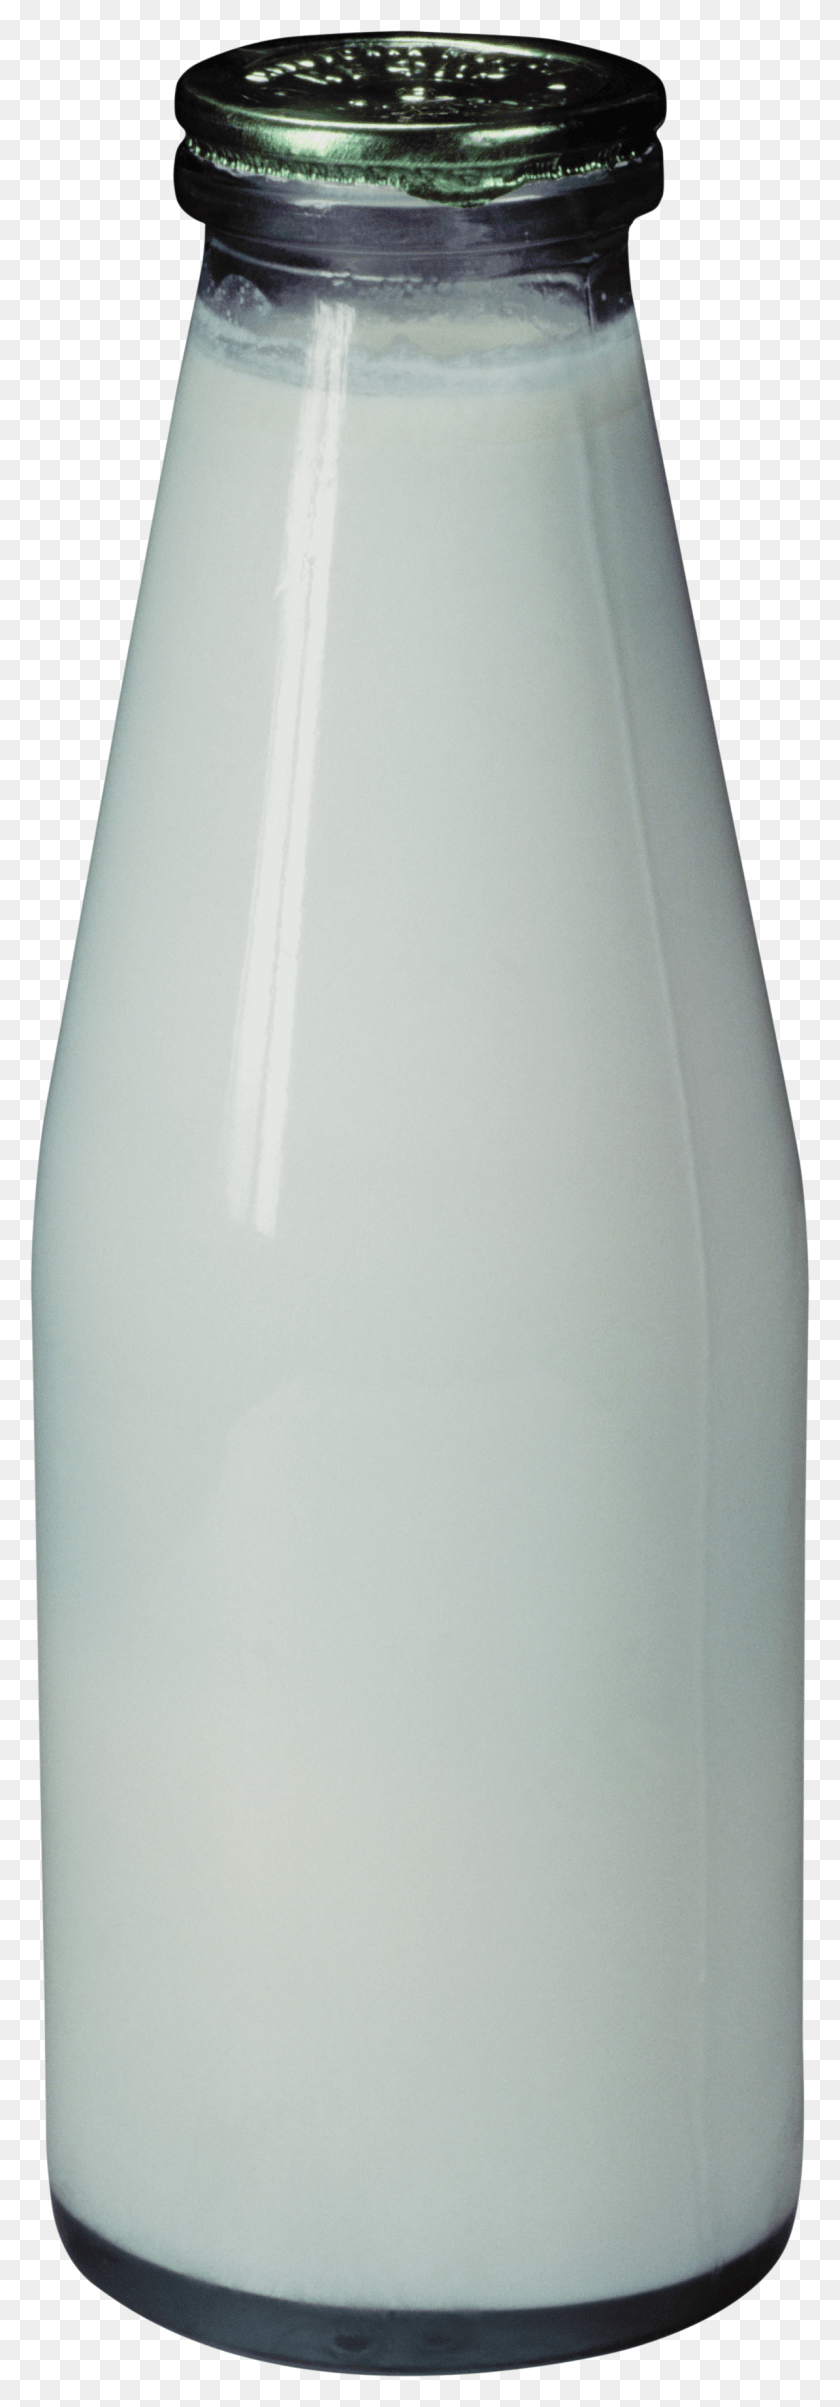 1194x3593 Free Milk Bottle Images Background Kefir V Steklyannih Butilkah HD PNG Download